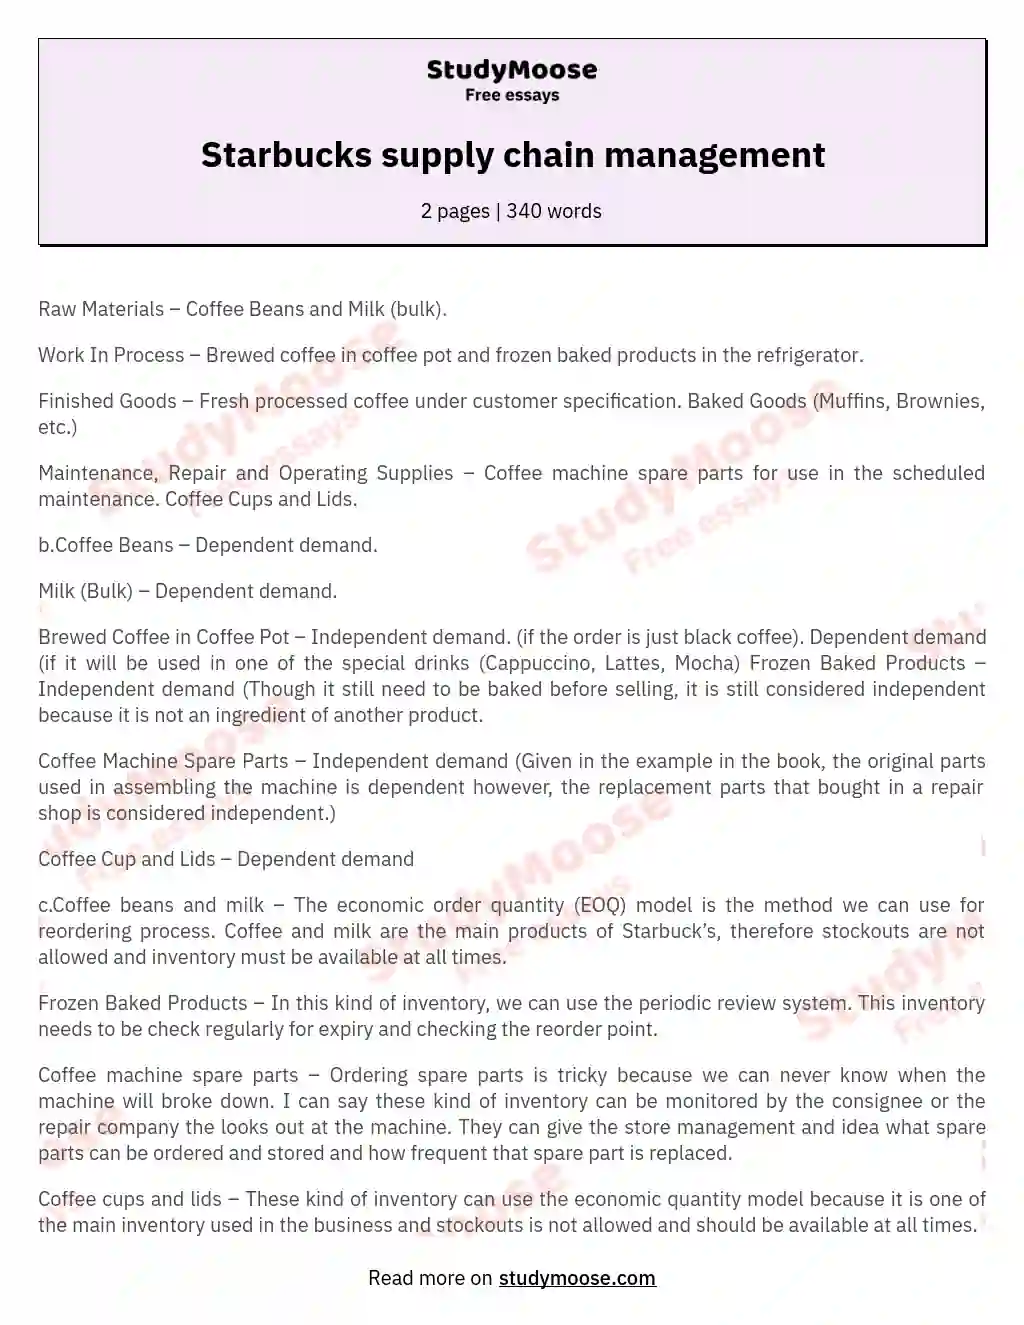 Starbucks supply chain management essay